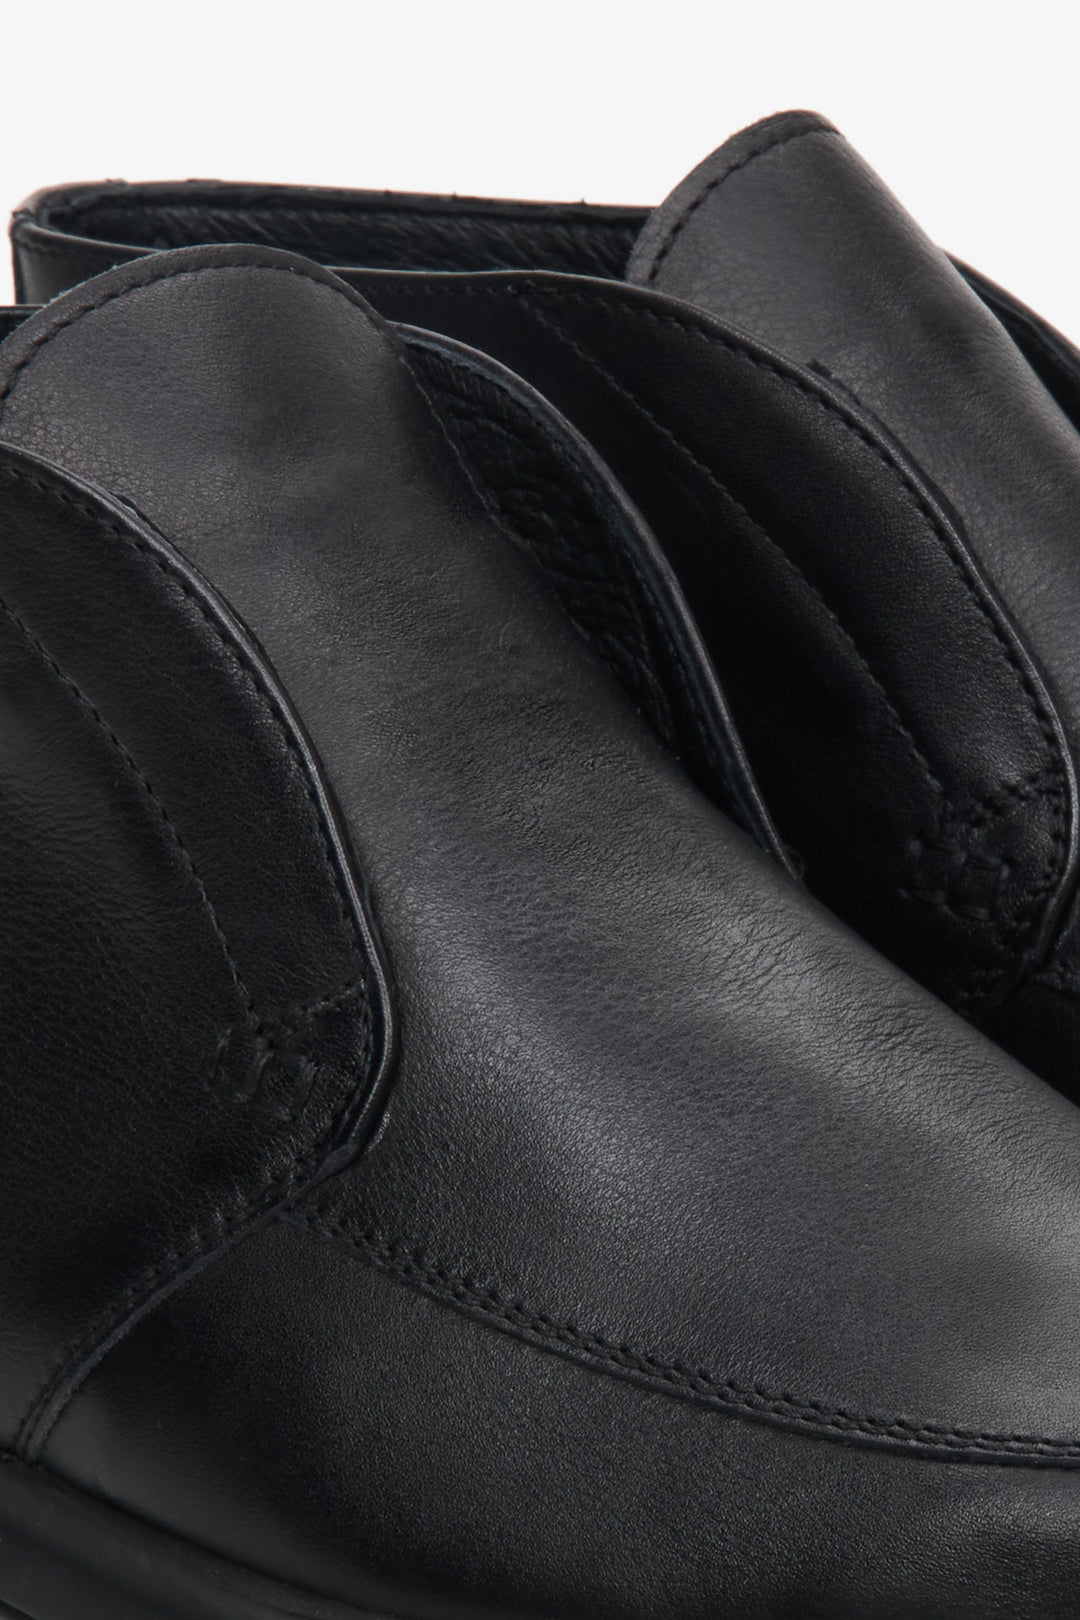 Buty męskie skórzane Estro wsuwane w kolorze czarnym z widocznymi przeszyciami.